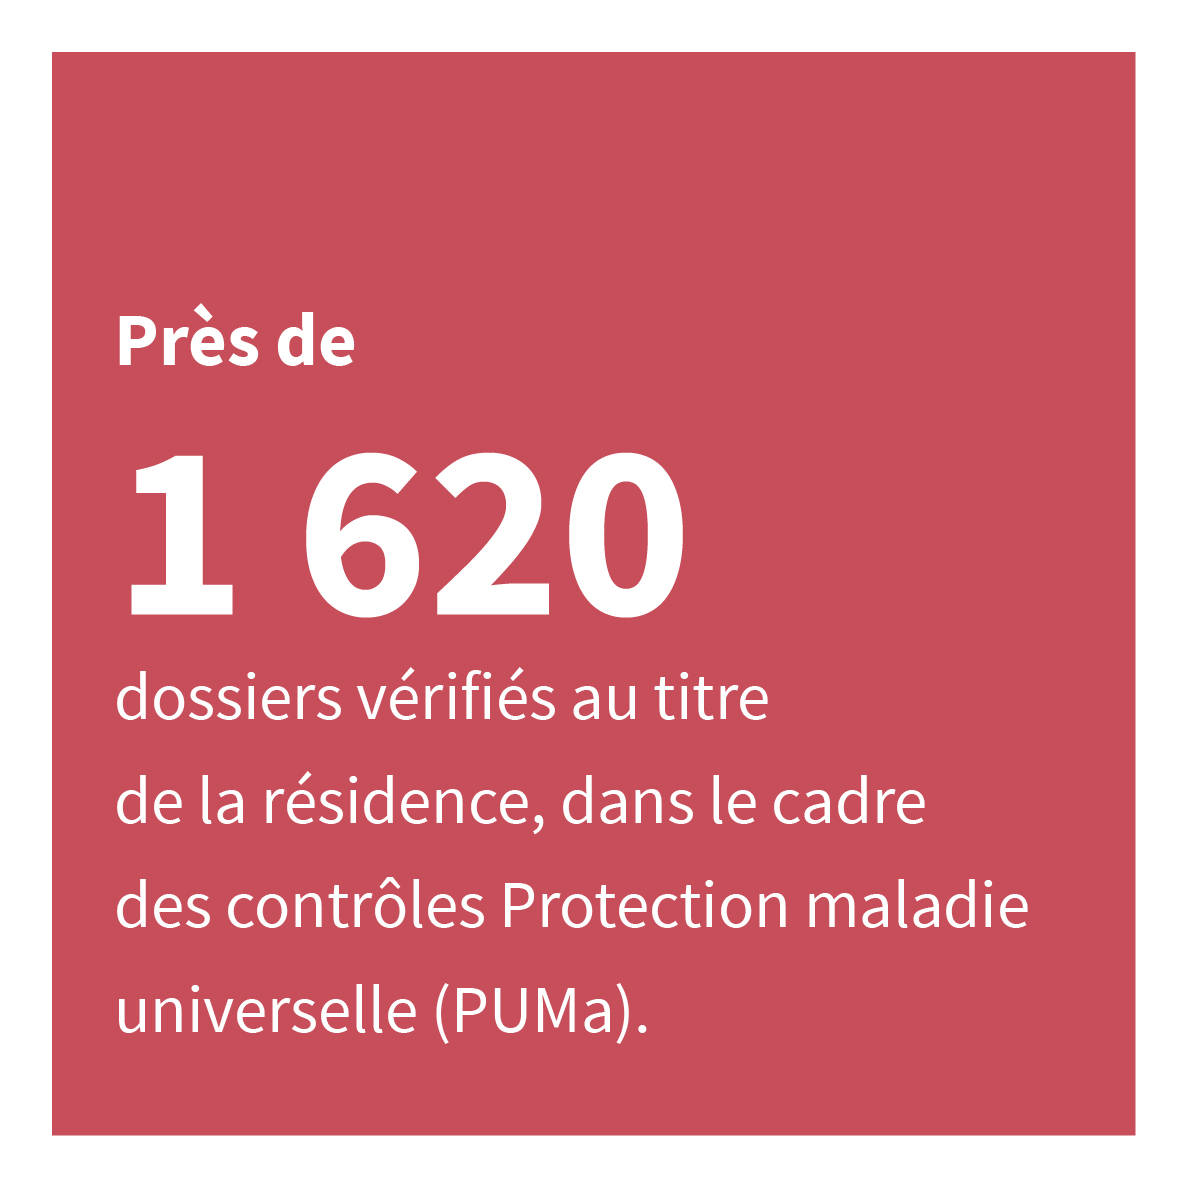 Près de 1 620 dossiers vérifiés au titre de la résidence, dans le cadre des contrôles Protection maladie universelle (PUMa).